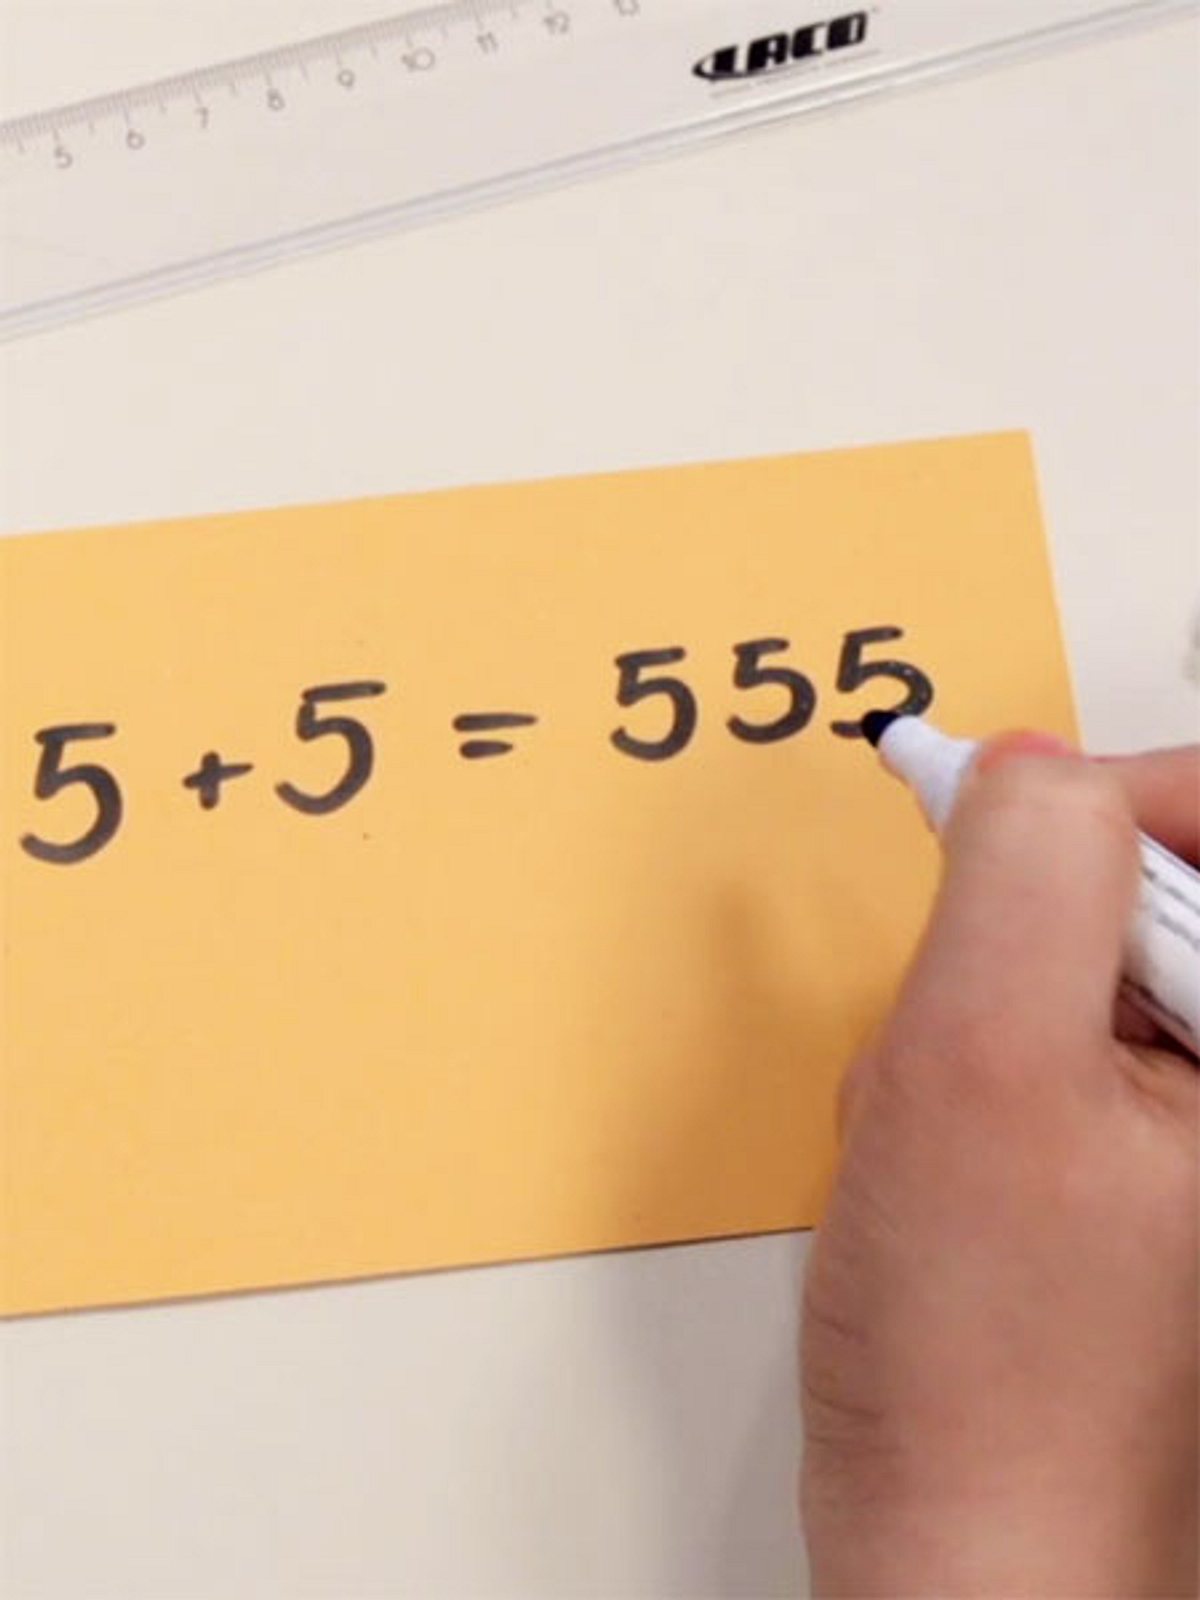 Rätselspaß im Video: Können Sie diese Mathe-Rechnung lösen?